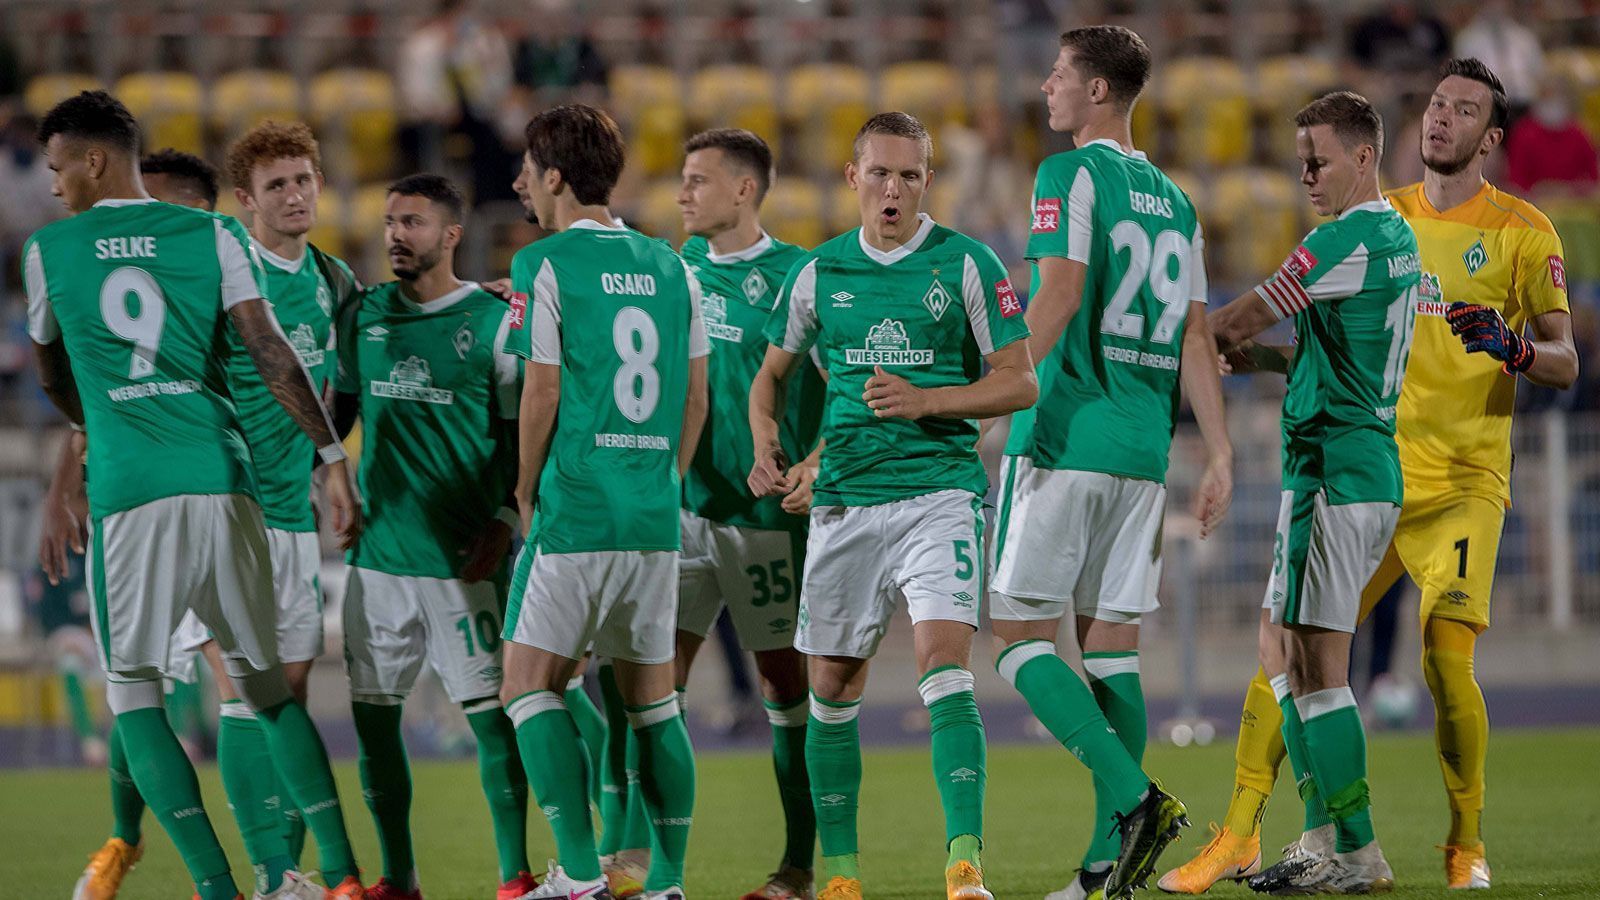 
                <strong>Platz 7: SV Werder Bremen</strong><br>
                Durchschnittsalter: 25,2 JahreJüngster Spieler: Johan Mina (18 Jahre)Ältester Spieler: Niklas Moisander (34 Jahre)
              